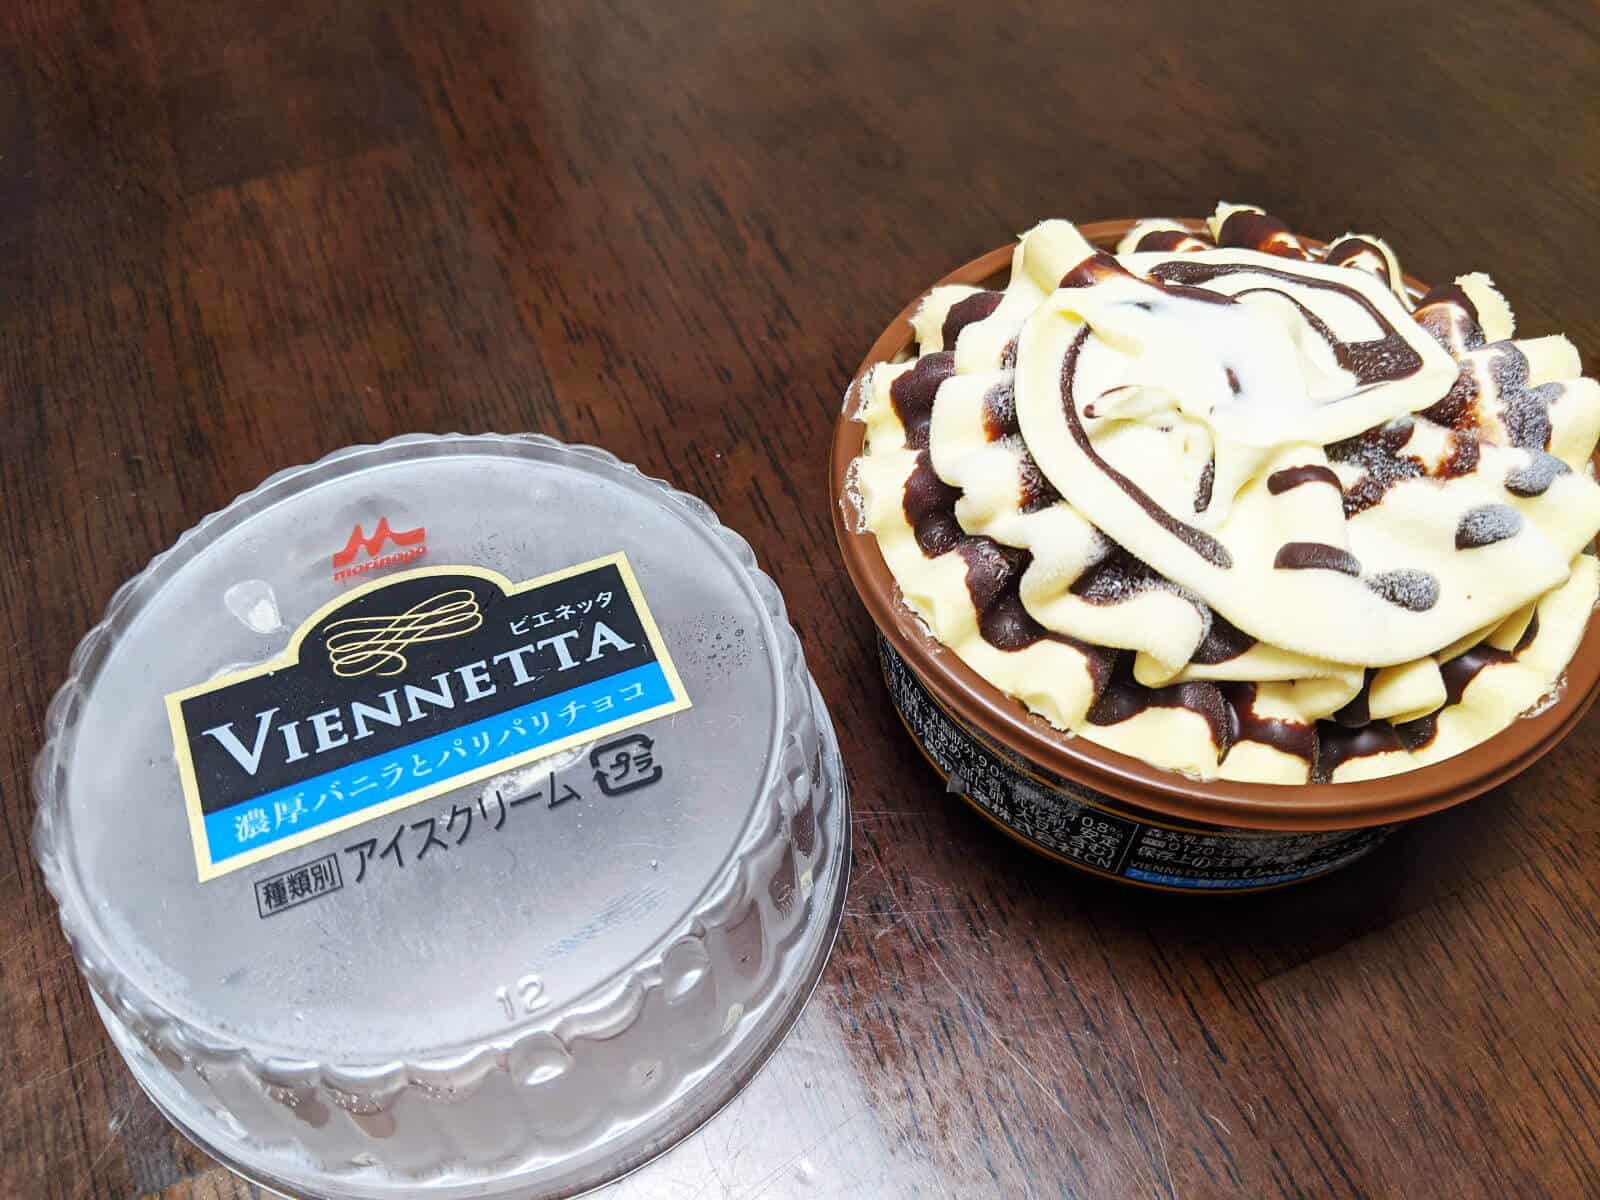 ビエネッタのアイスケーキは今でも心ときめくアイスですね 榊裕次郎の公式ブログ Transparently